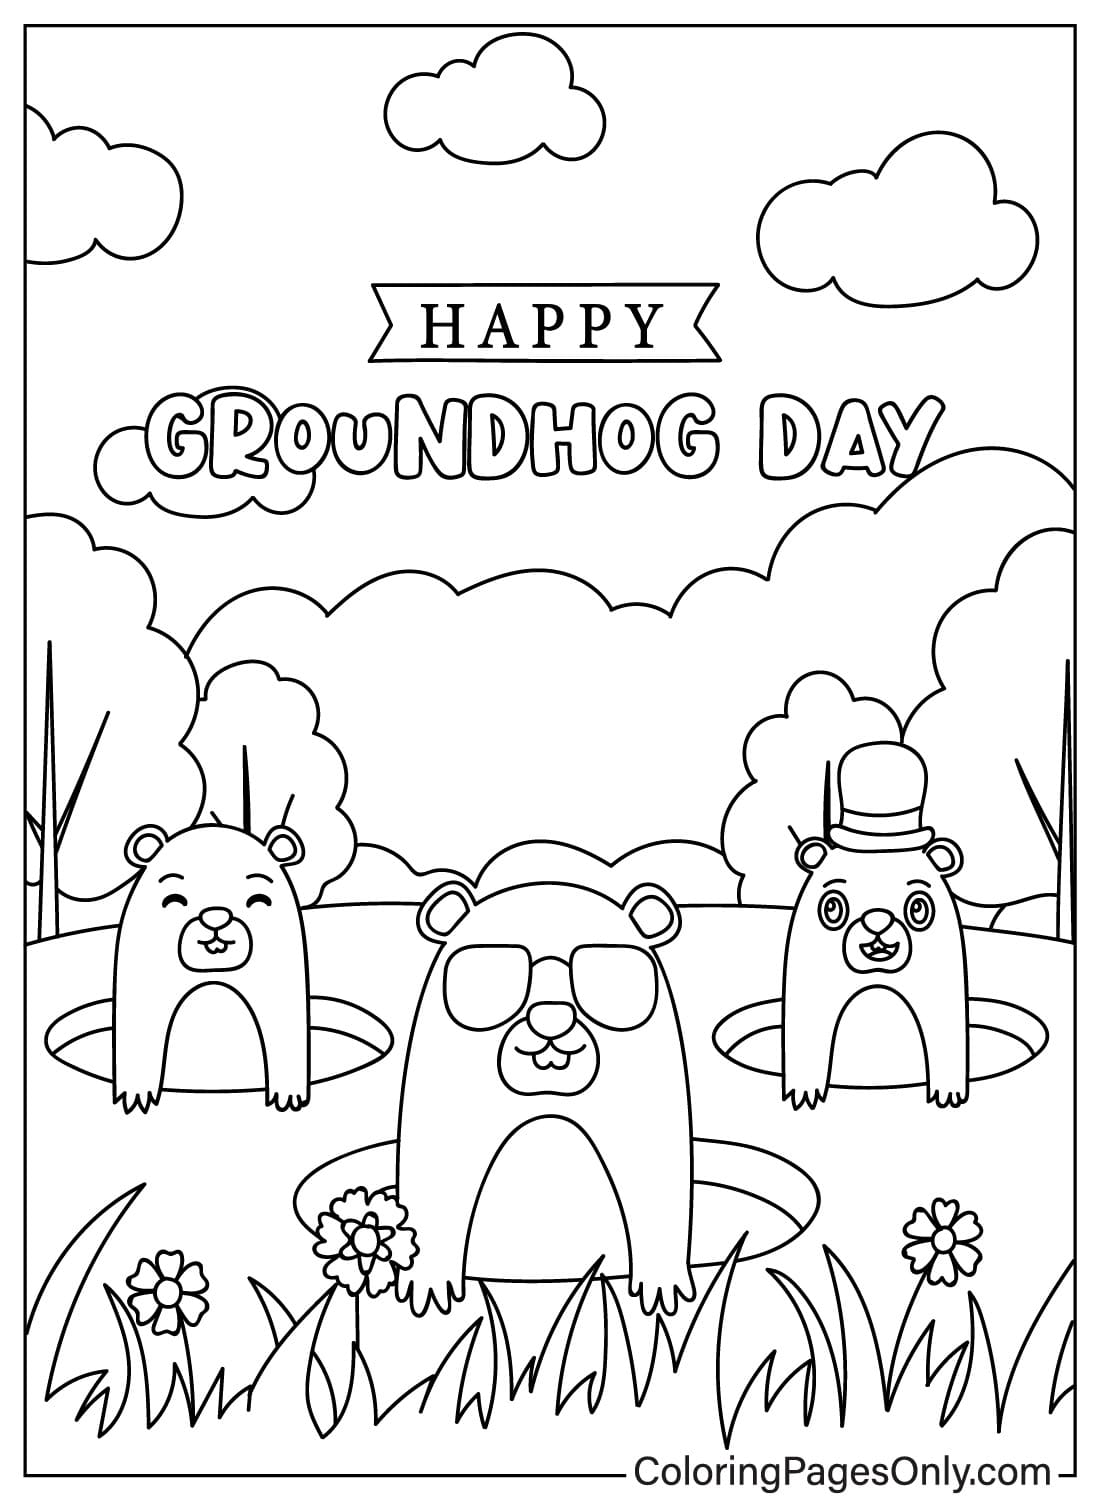 Page couleur du jour de la marmotte de Groundhog Day